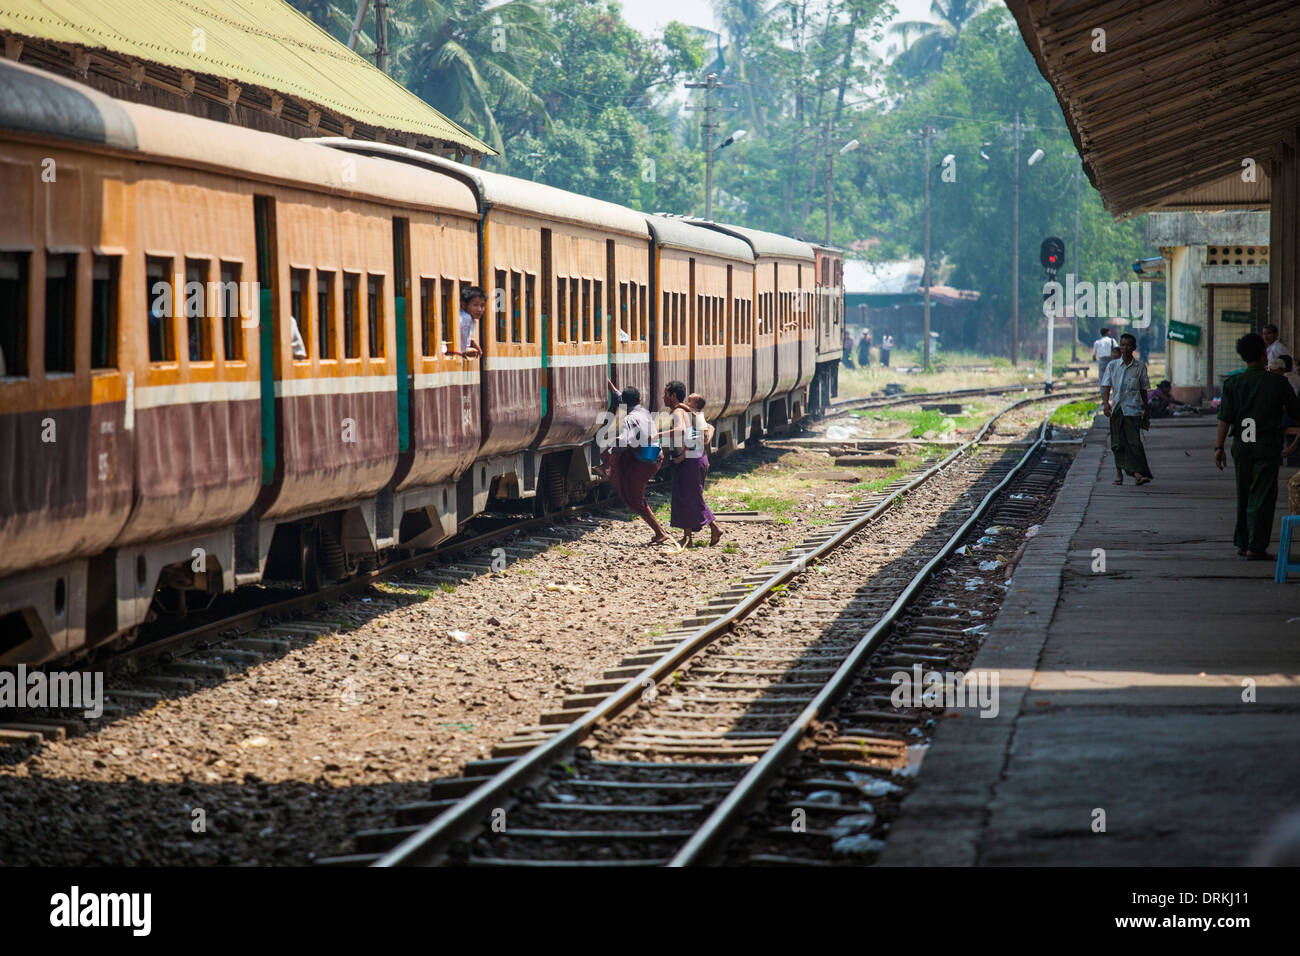 Rushing to catch a train in Yangon, Myanmar Stock Photo